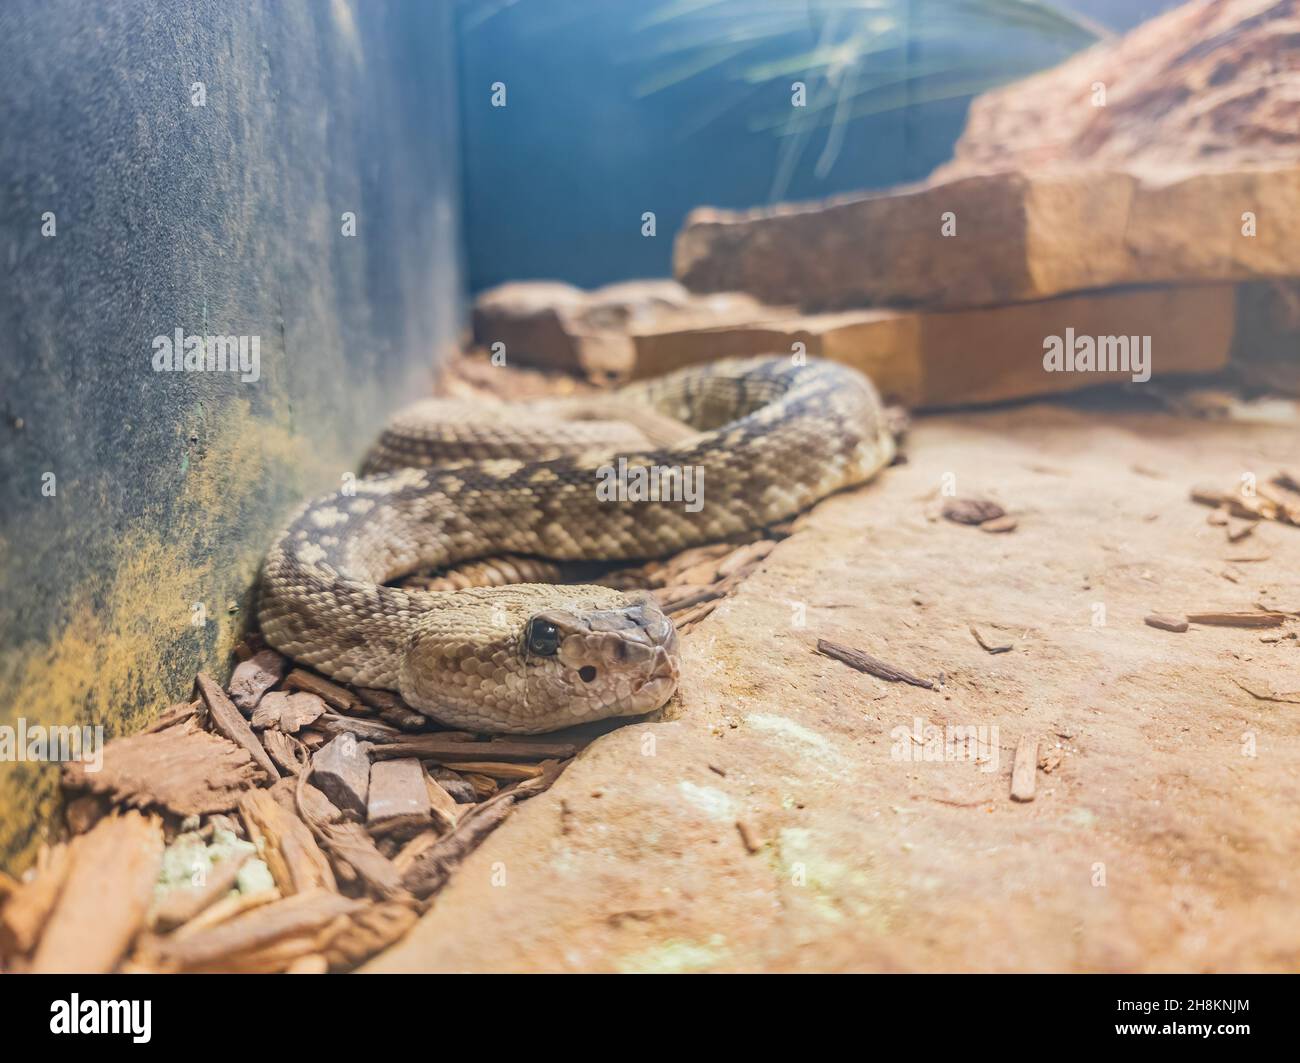 Close up shot of a Crotalus catalinensis snake at Oklahoma Stock Photo